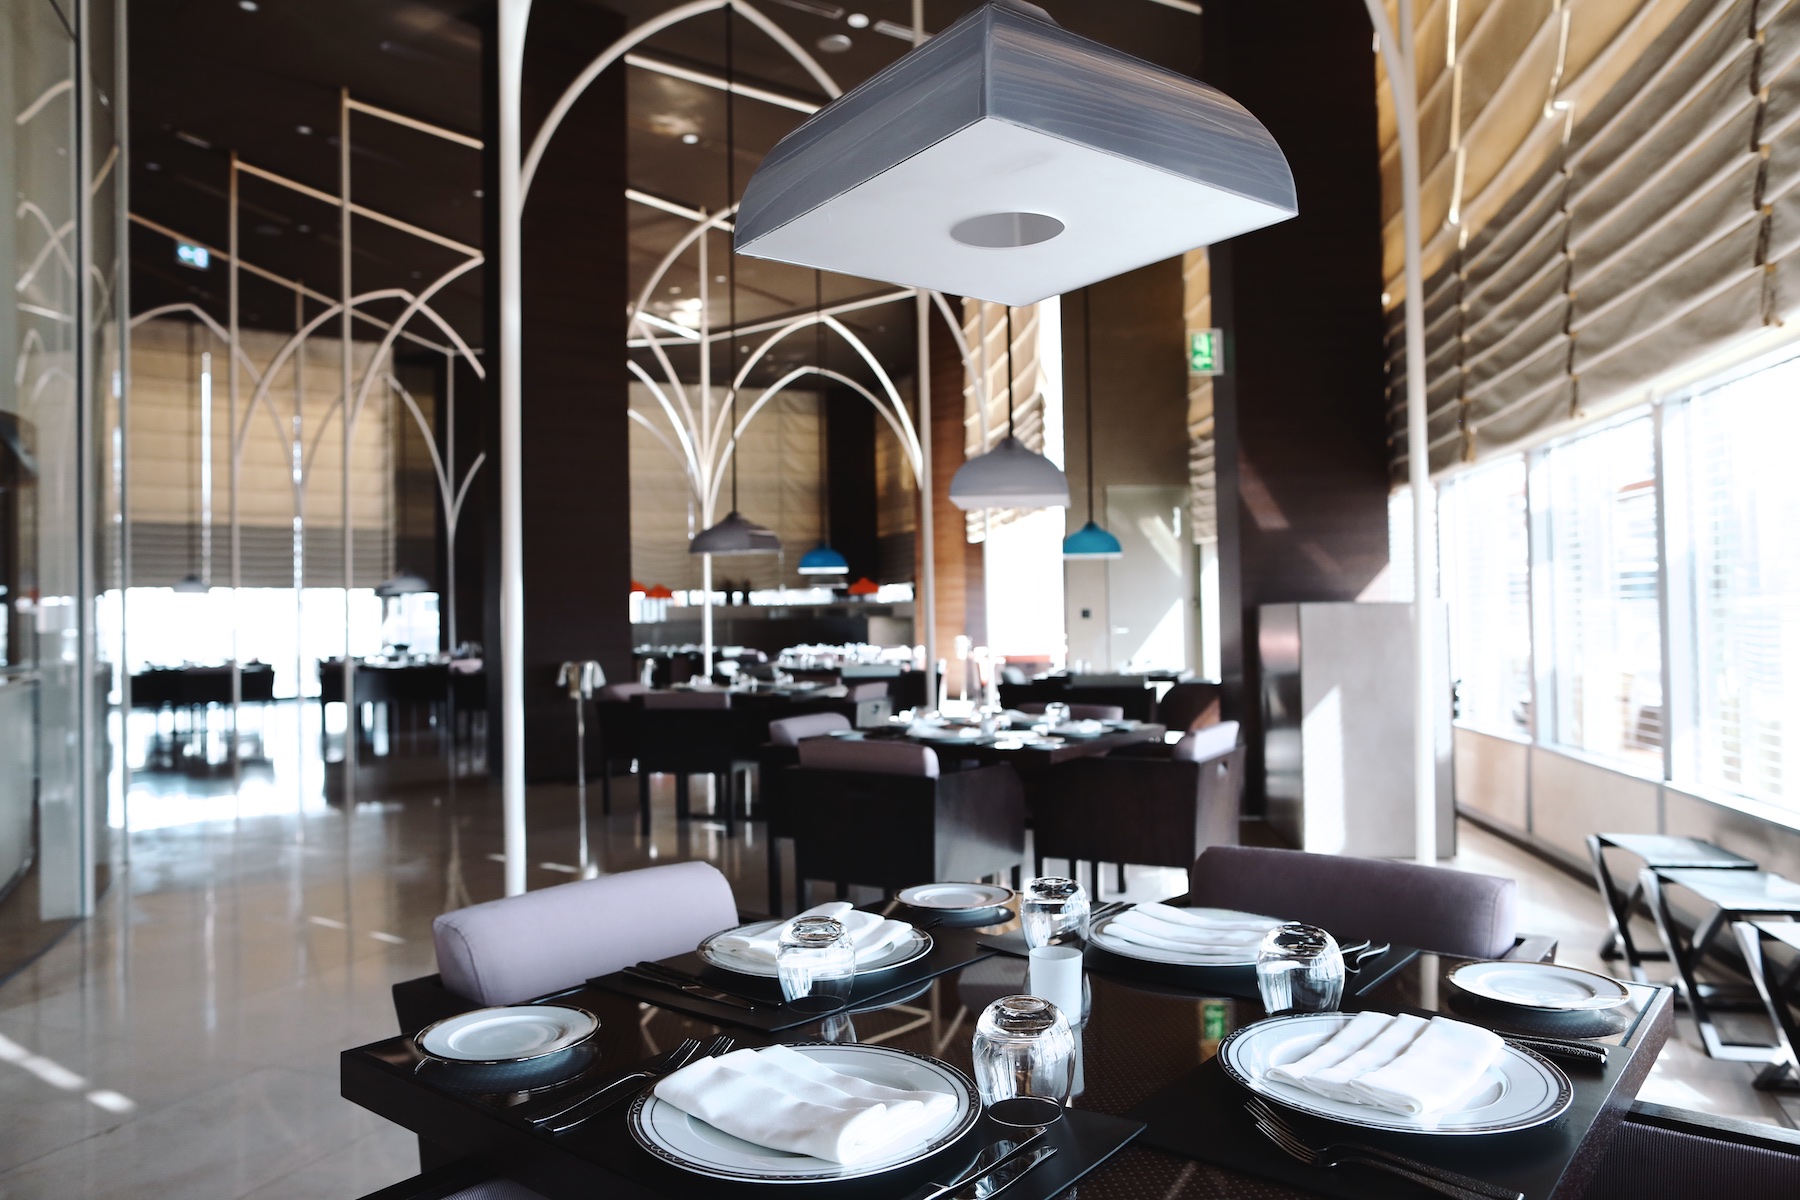 ARMANI HOTEL DUBAI - PULP COLLECTORS REVIEW